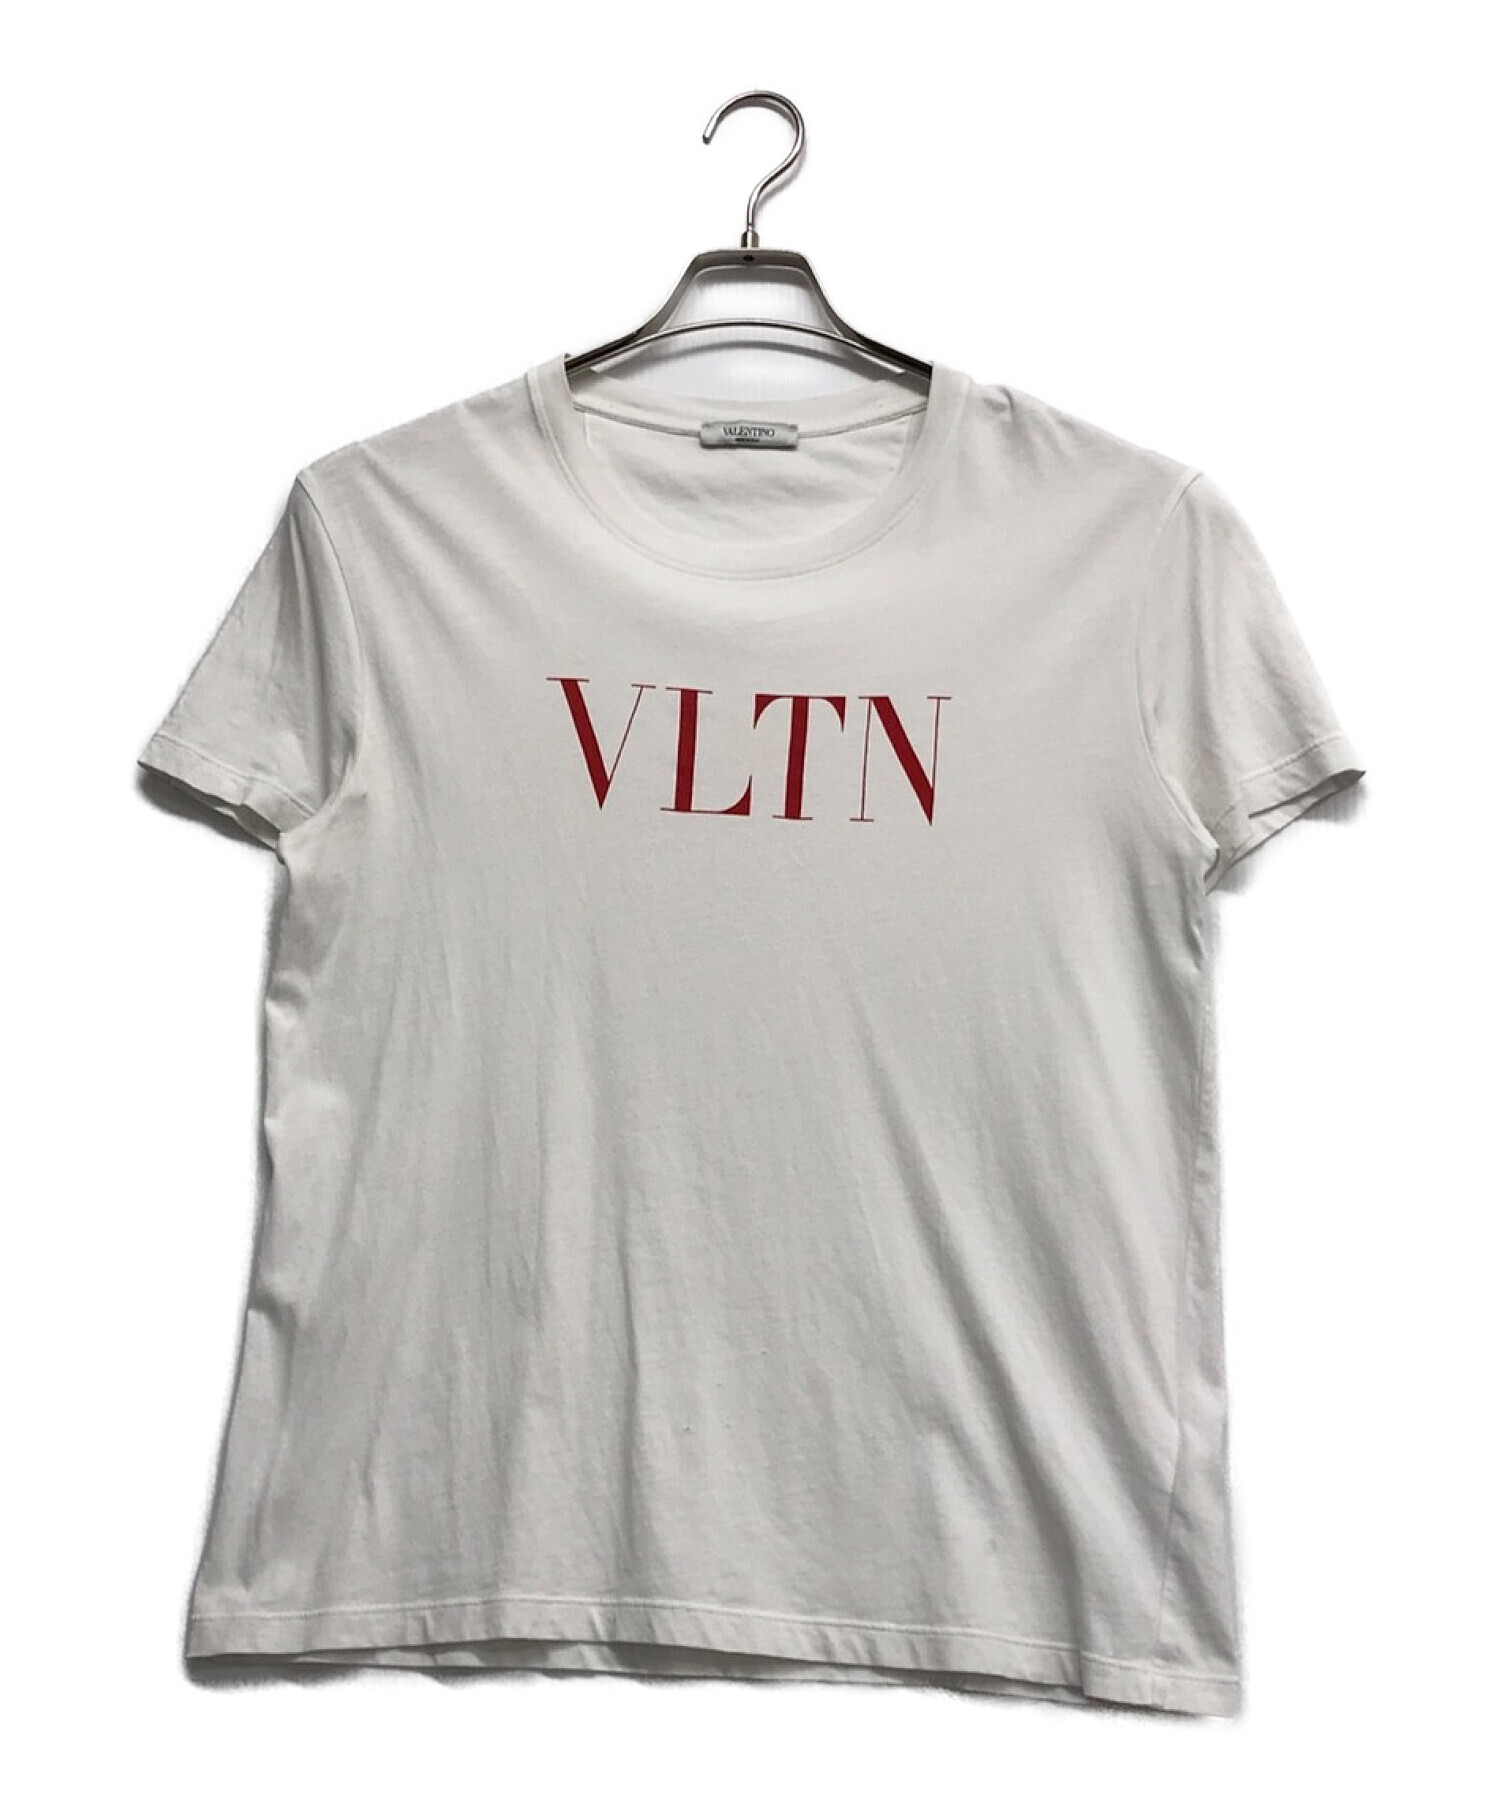 ヴァレンティノ VLTN ロゴTシャツ